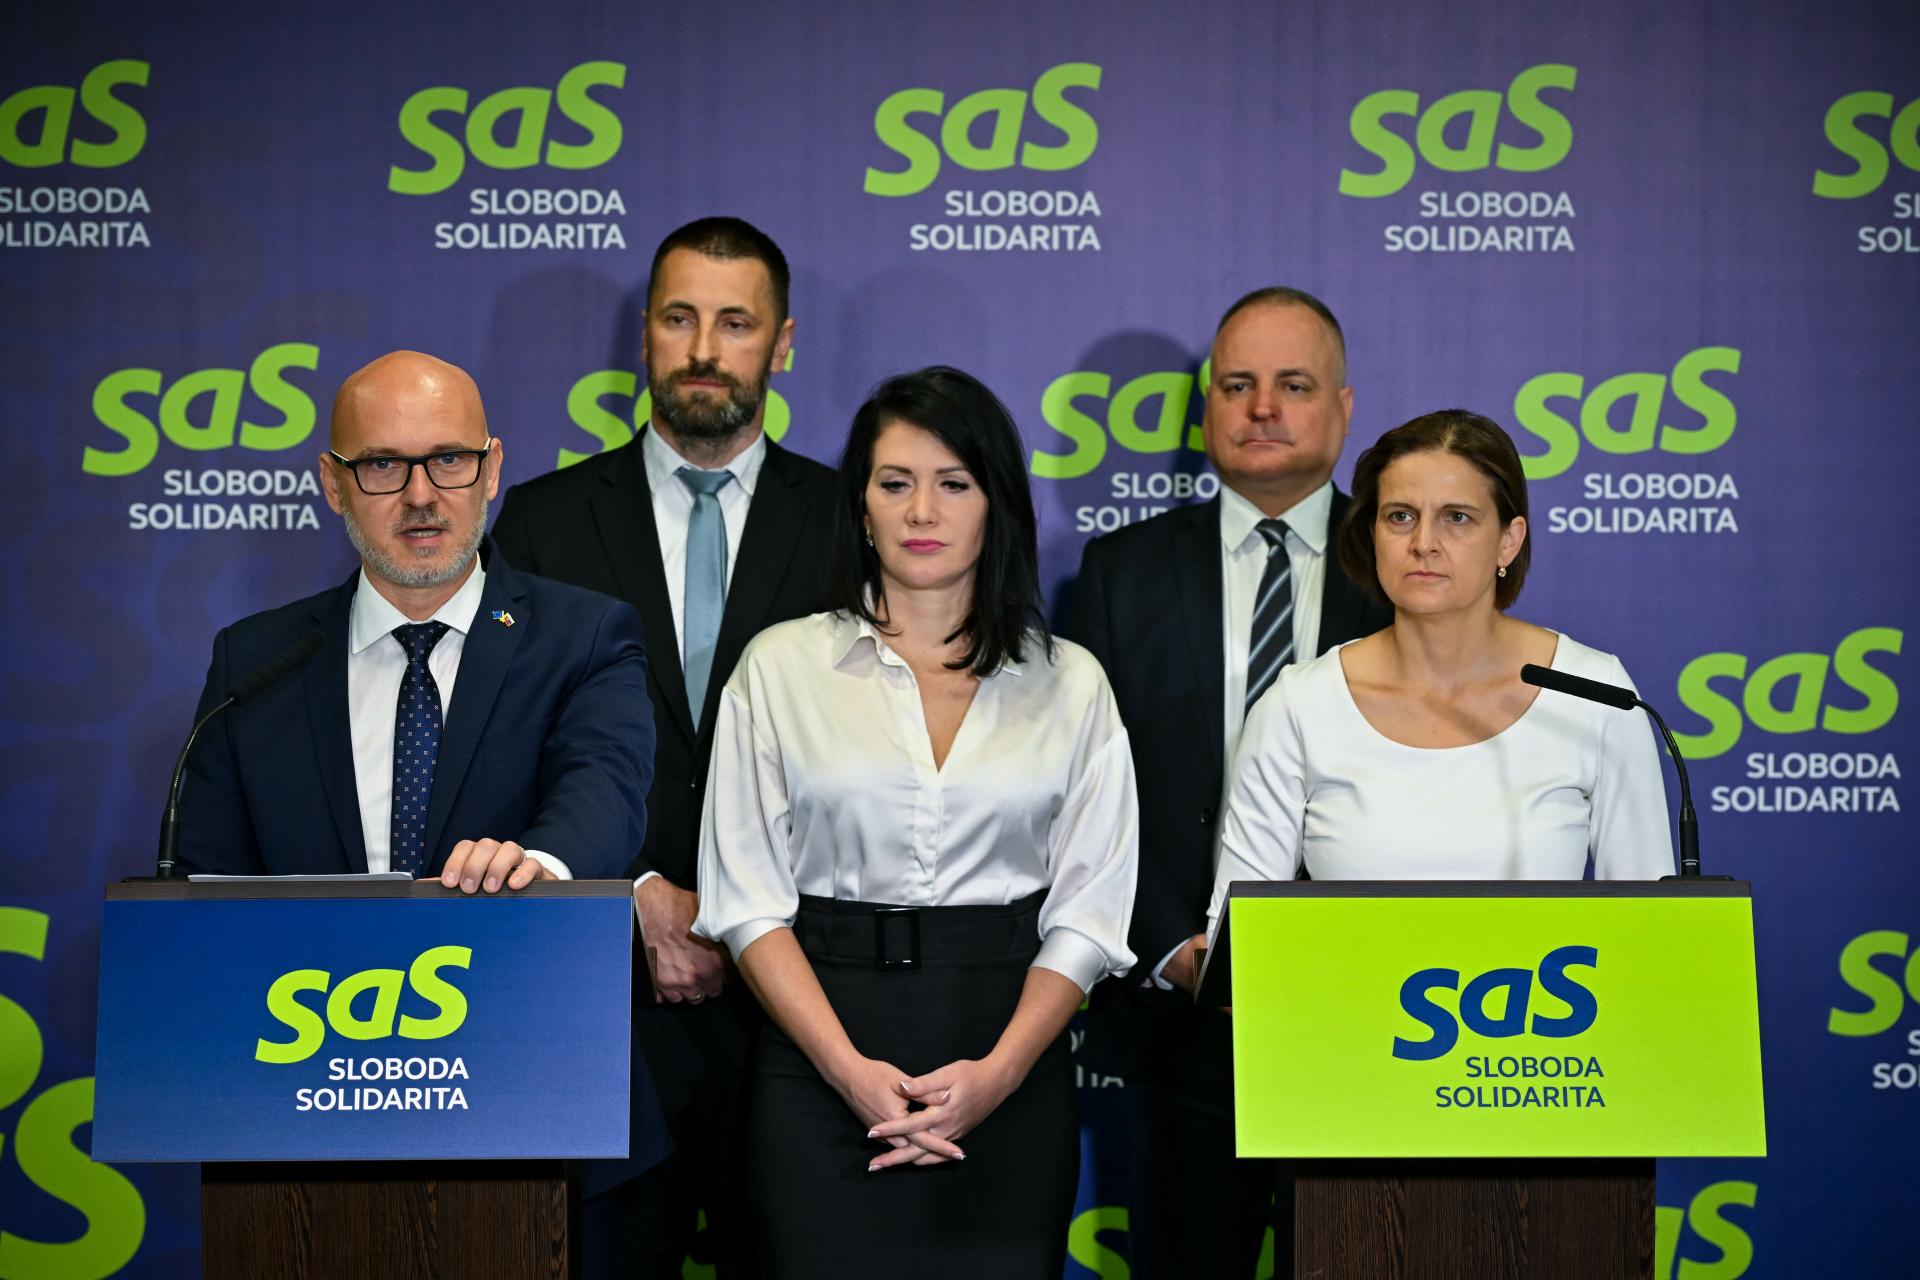 Vedenie SaS sa vyjadruje k aktuálnej politickej situácii